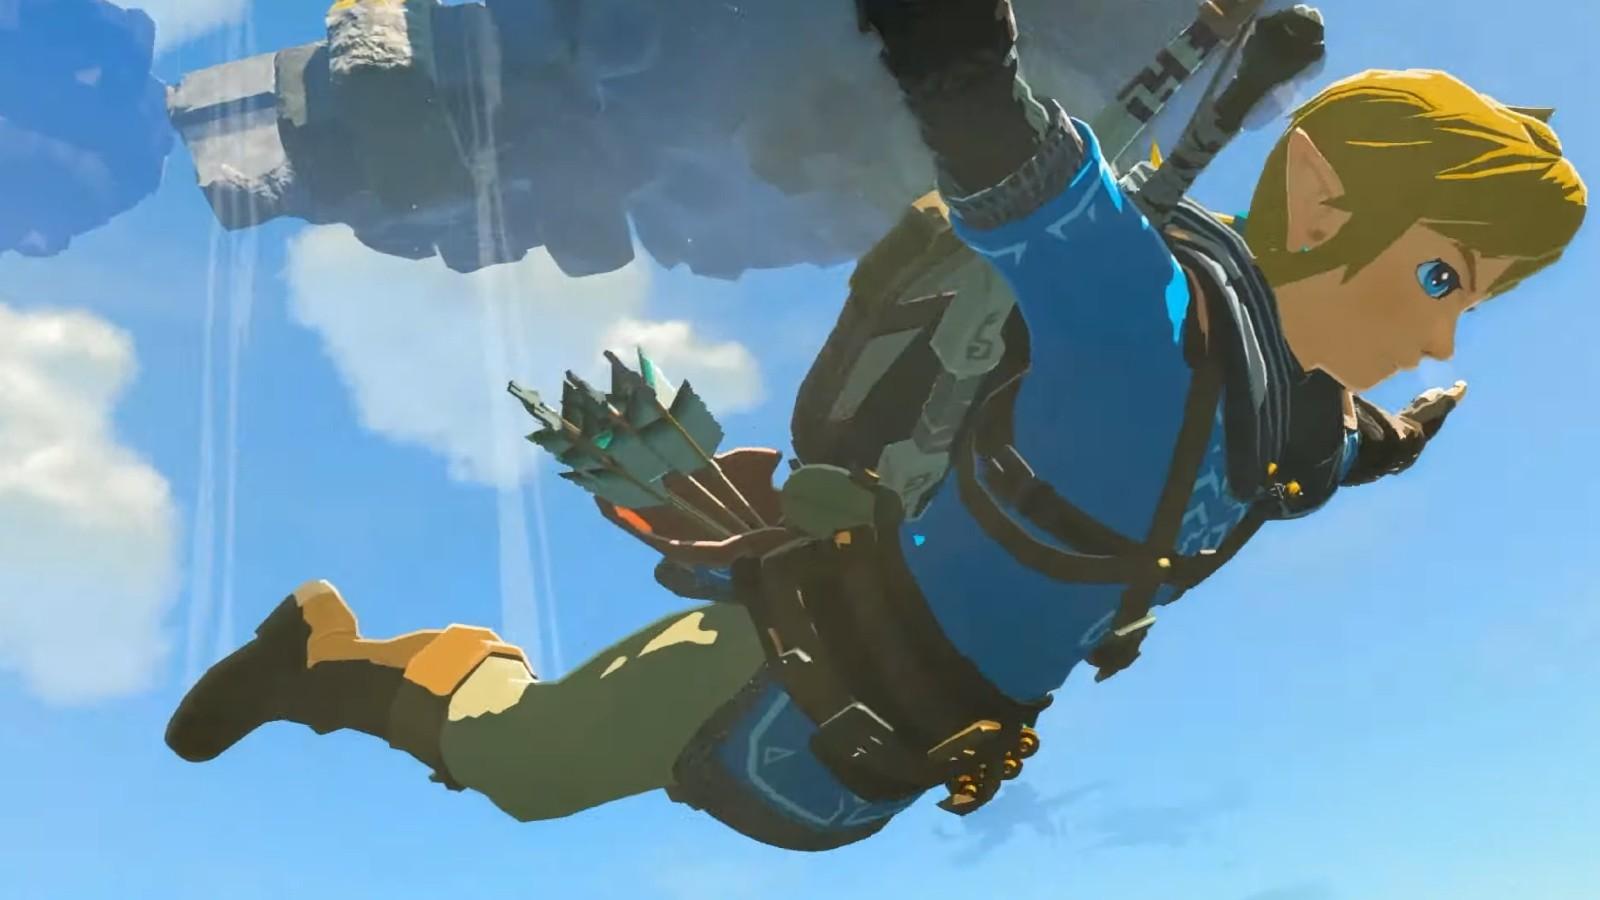 How to play The Legend of Zelda: The Wind Waker in 2023 - Dexerto